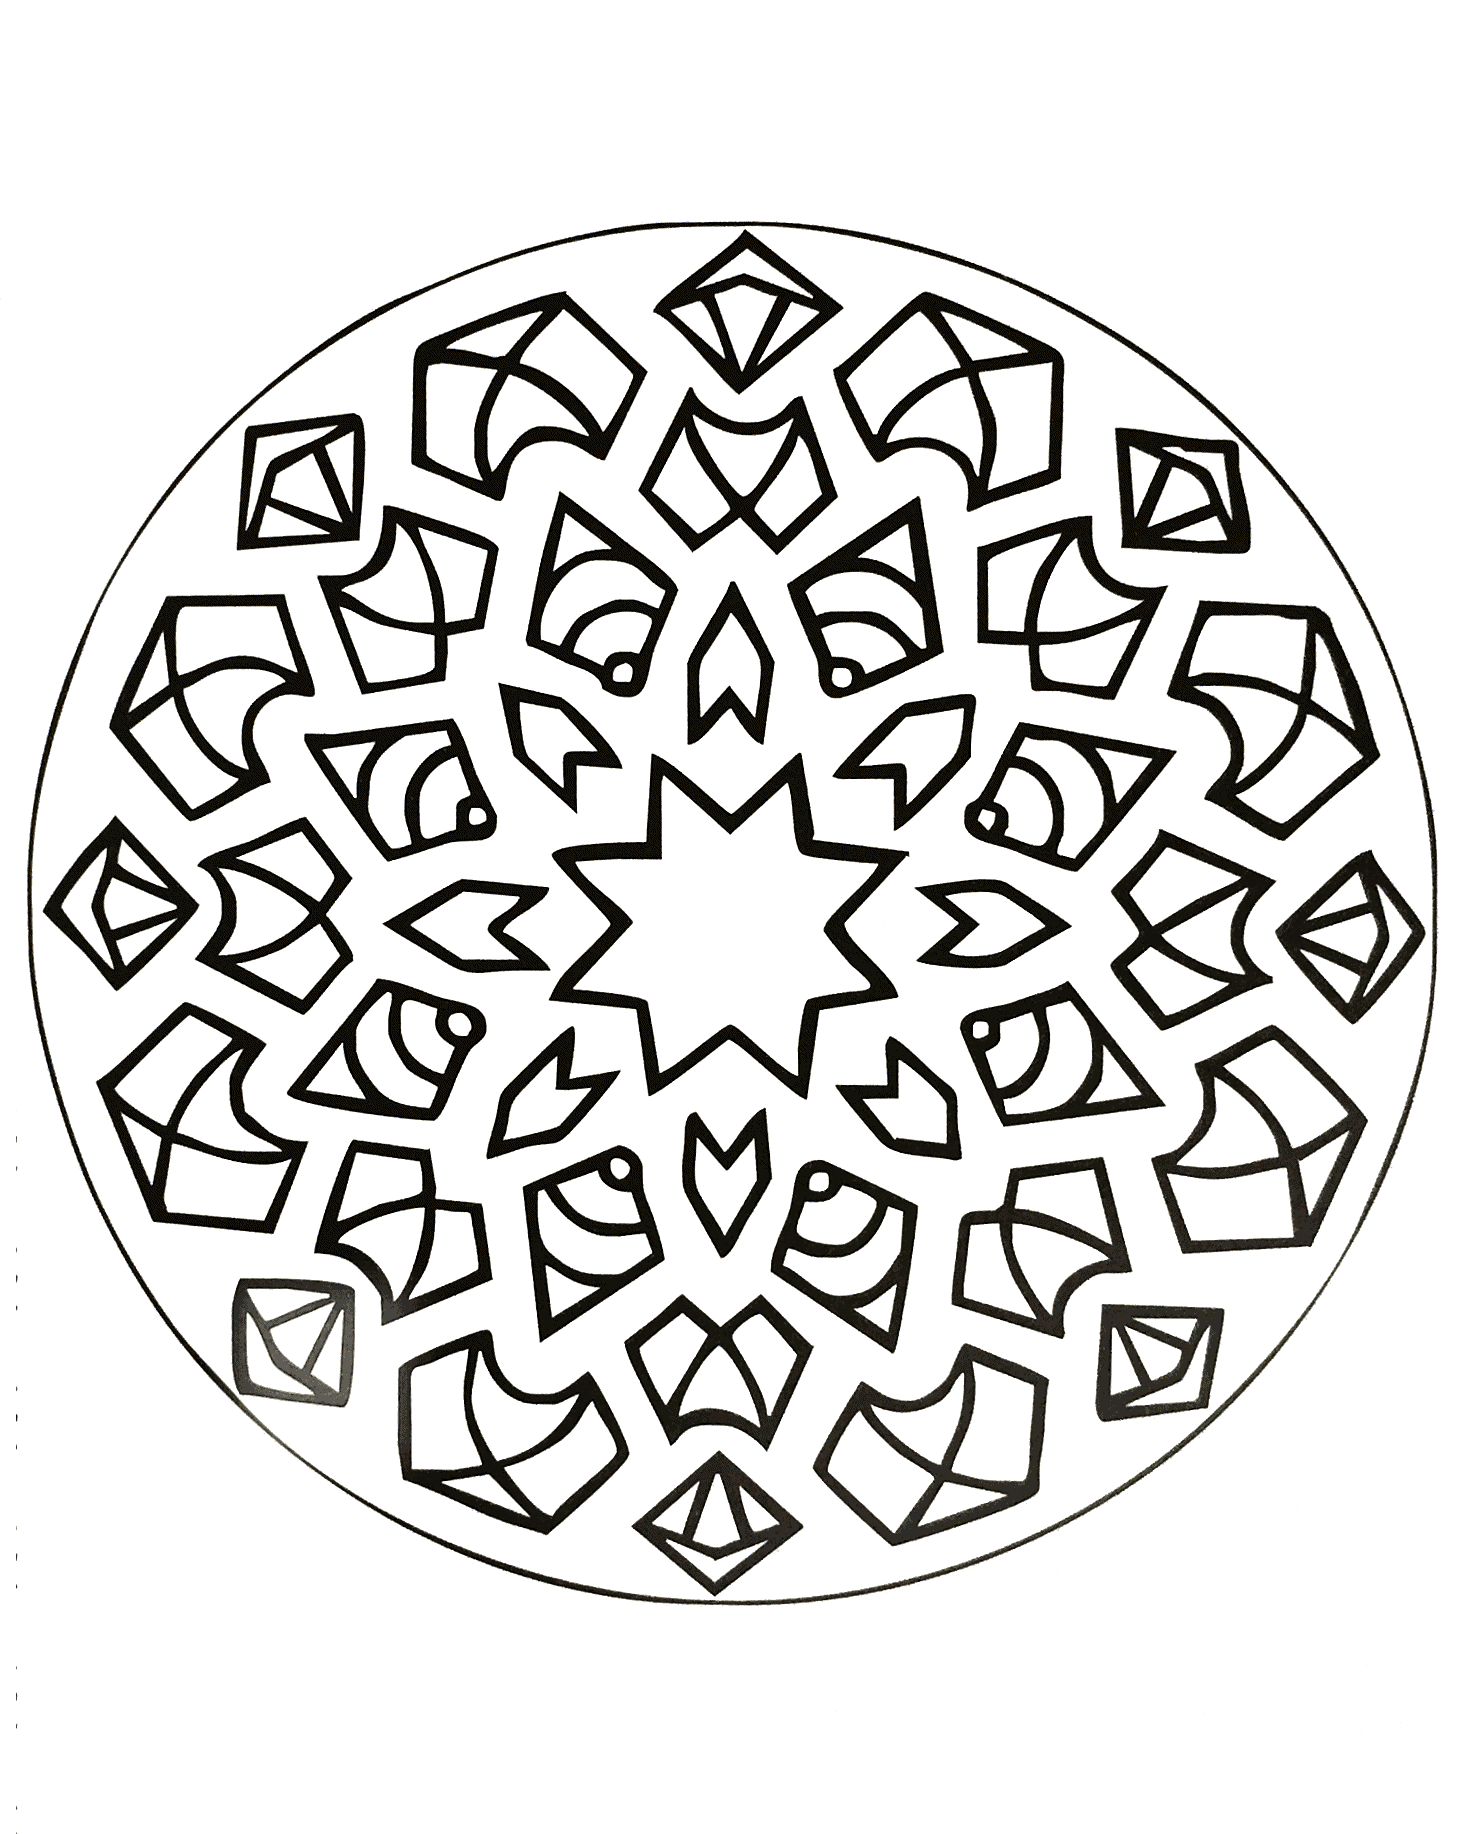 Préparez vos feutres et crayons pour réaliser la mise en couleur de ce Mandala avec étoiles et formes nocturnes plein de petits détails et zones intriquées.